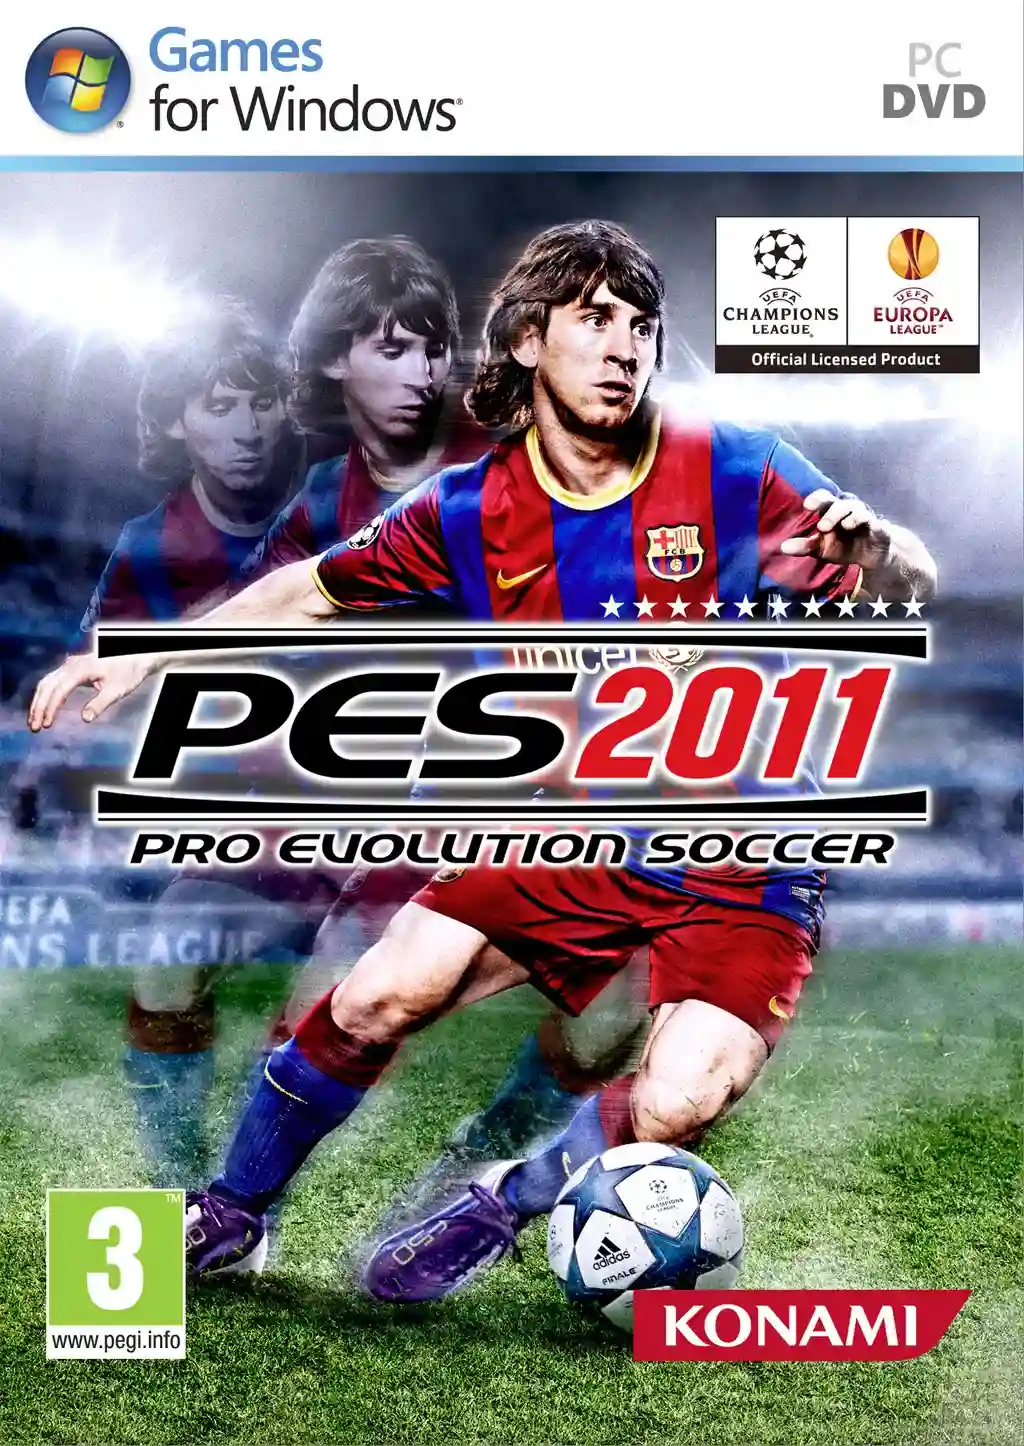 Pro Evolution Soccer PES 2011